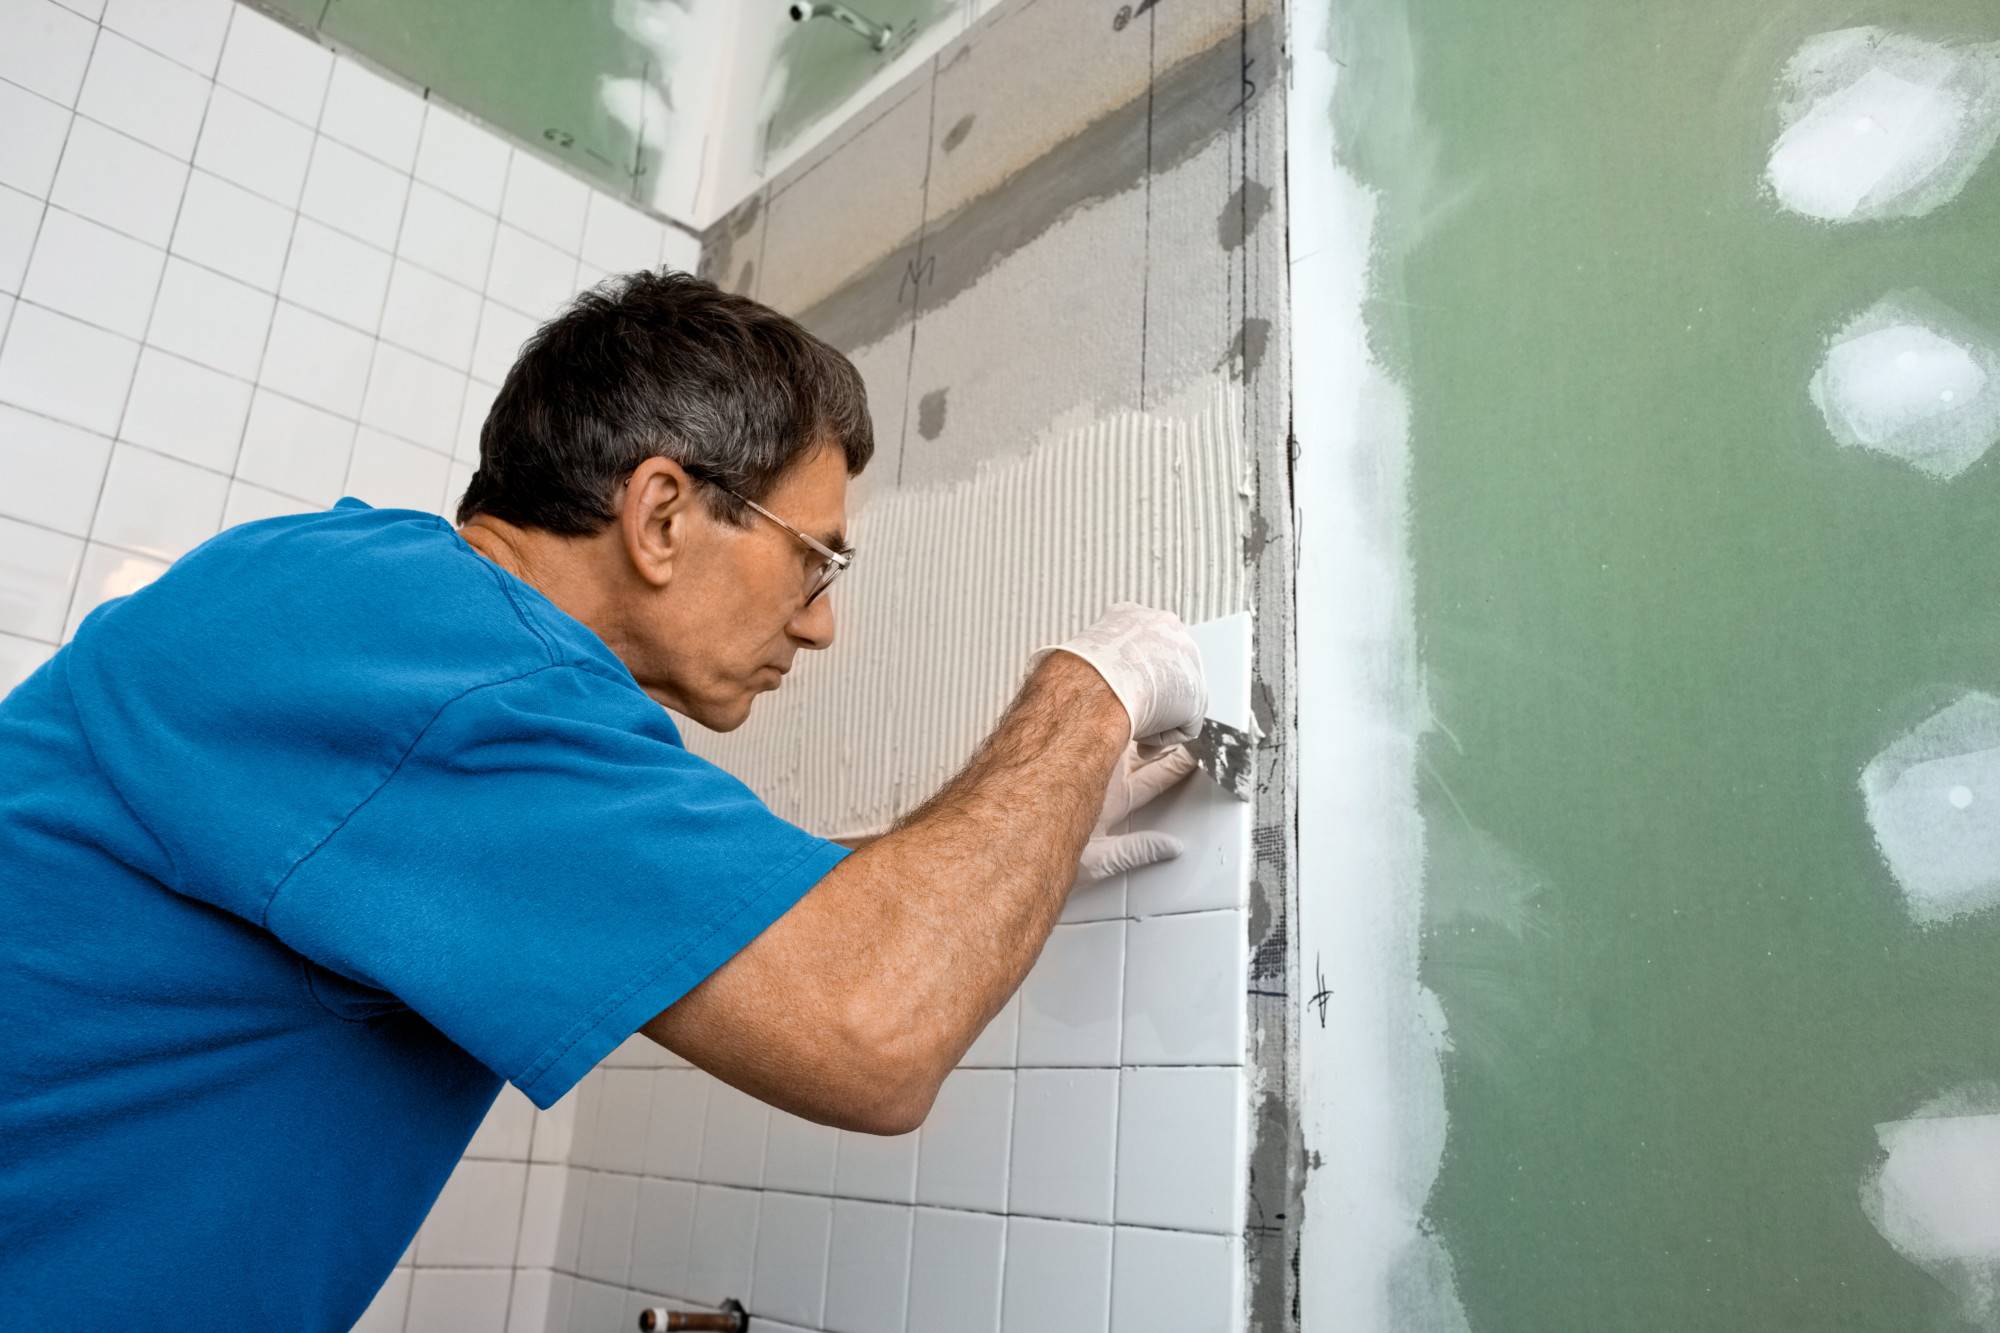 Подготовка поверхностей в ванной для укладки плитки: выравнивание стен и обработка пола перед работой